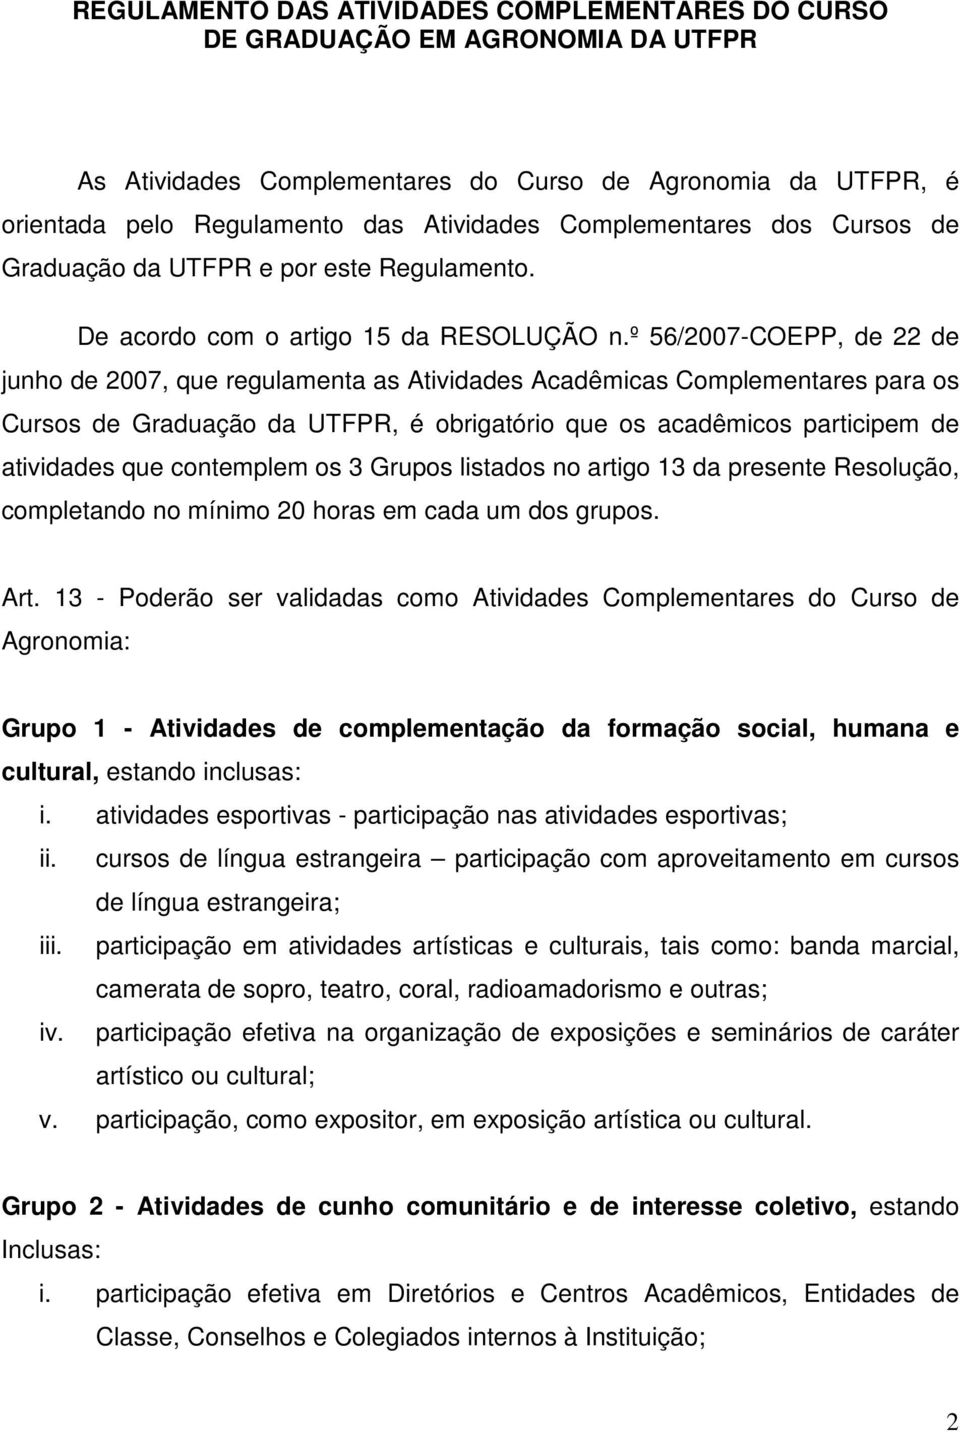 º 56/2007-COEPP, de 22 de junho de 2007, que regulamenta as Atividades Acadêmicas Complementares para os Cursos de Graduação da UTFPR, é obrigatório que os acadêmicos participem de atividades que